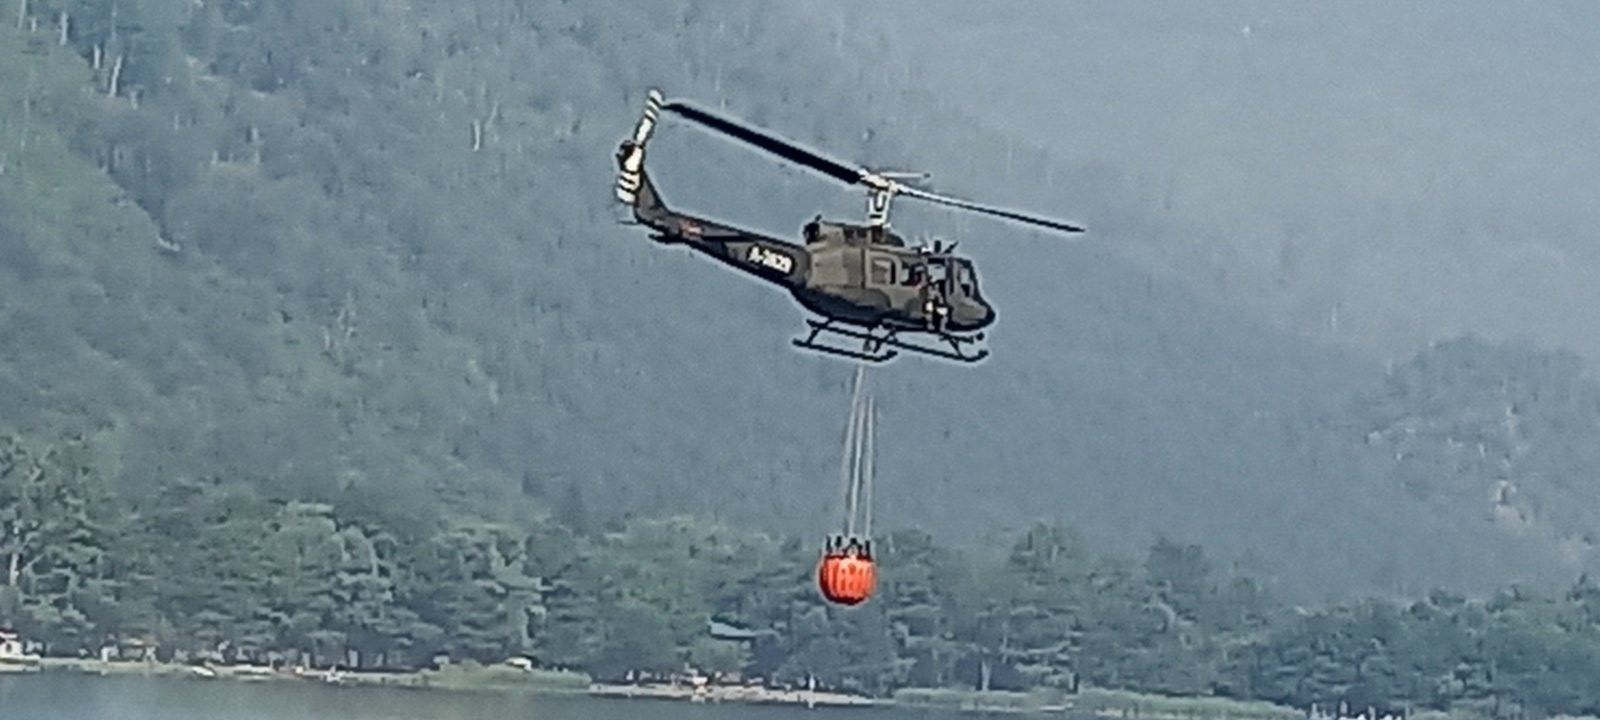 helikopter-osbih-pozar-gasi-una.jpg